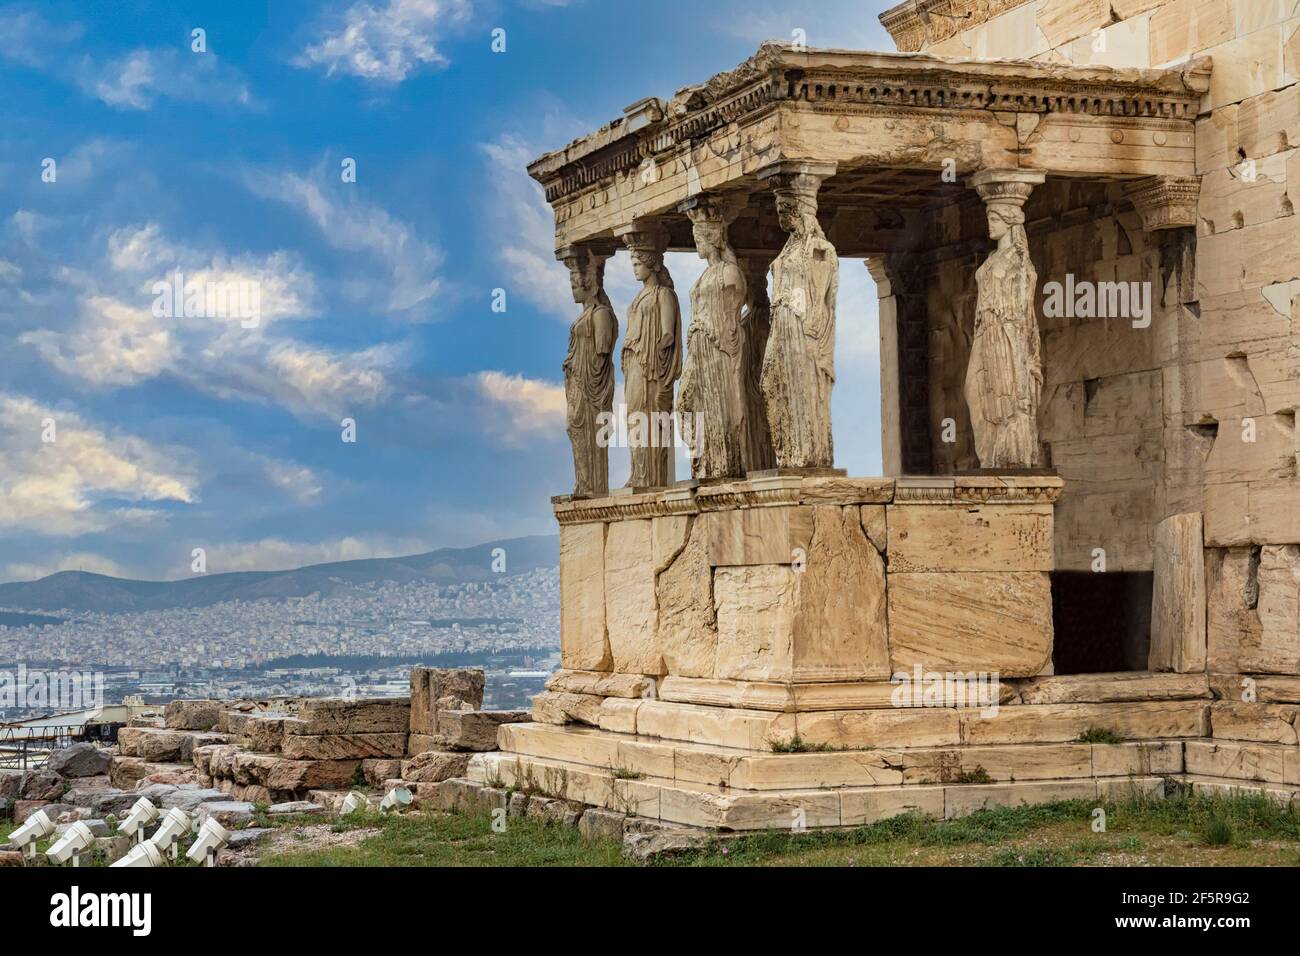 Athena Nike temple in Athens Stock Photo - Alamy